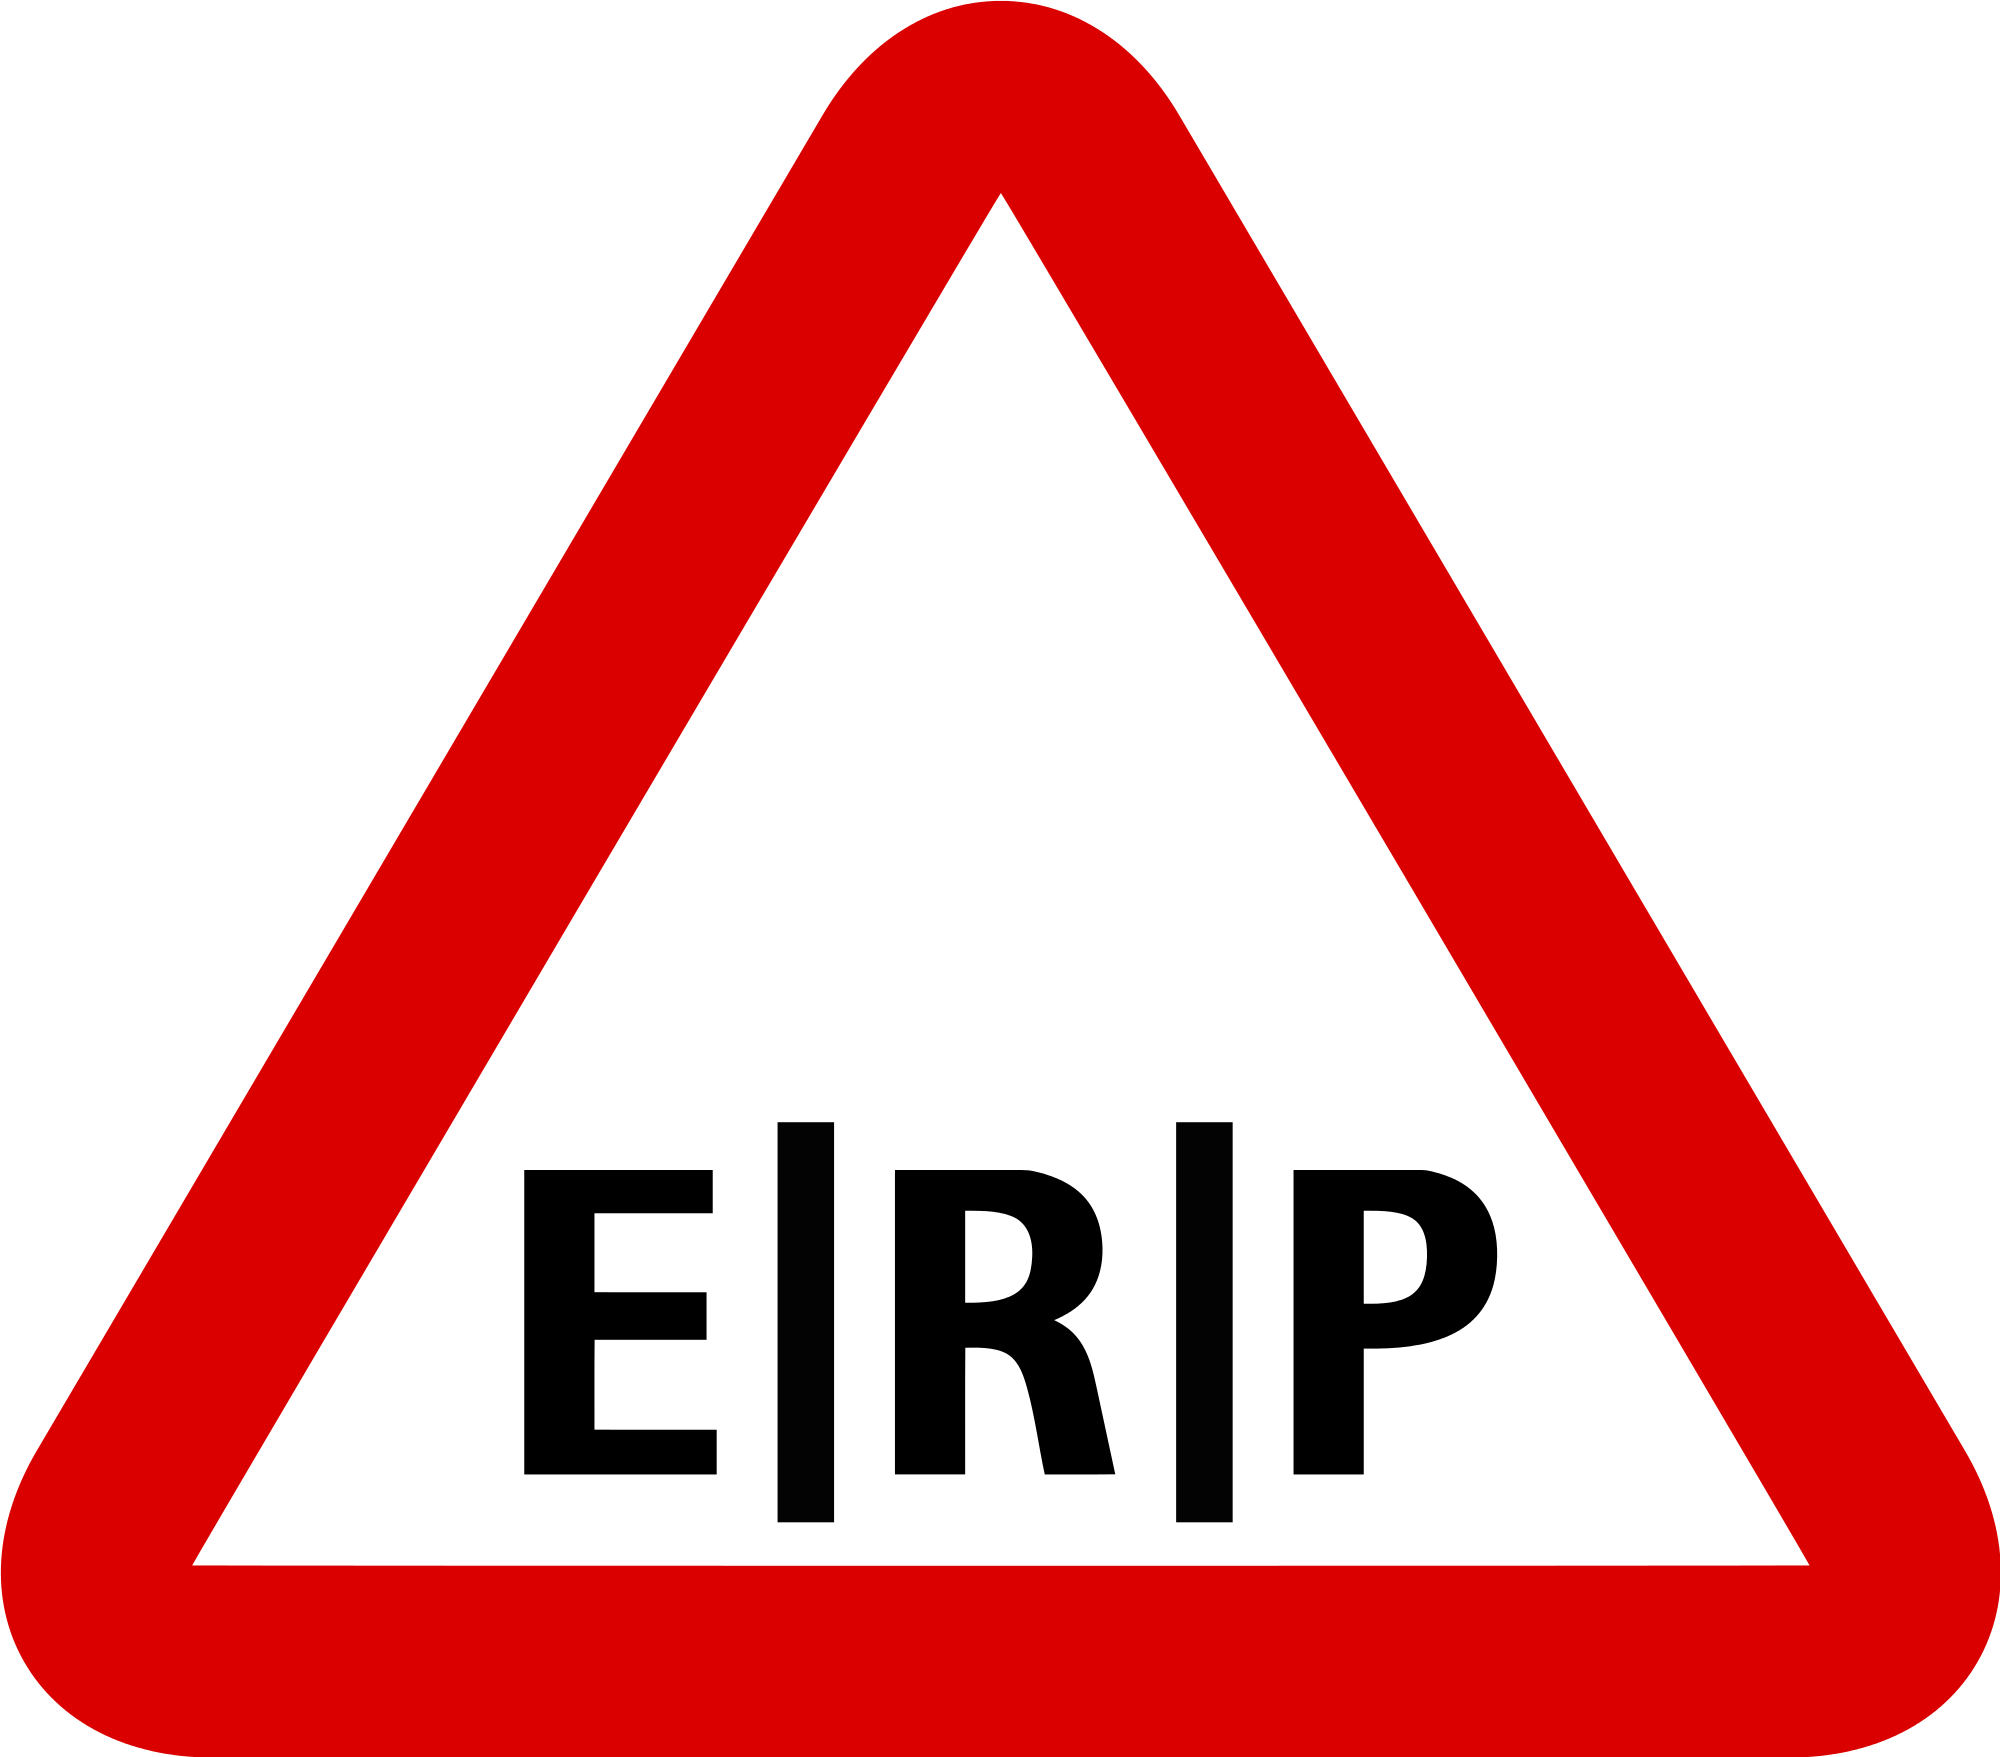 ERP